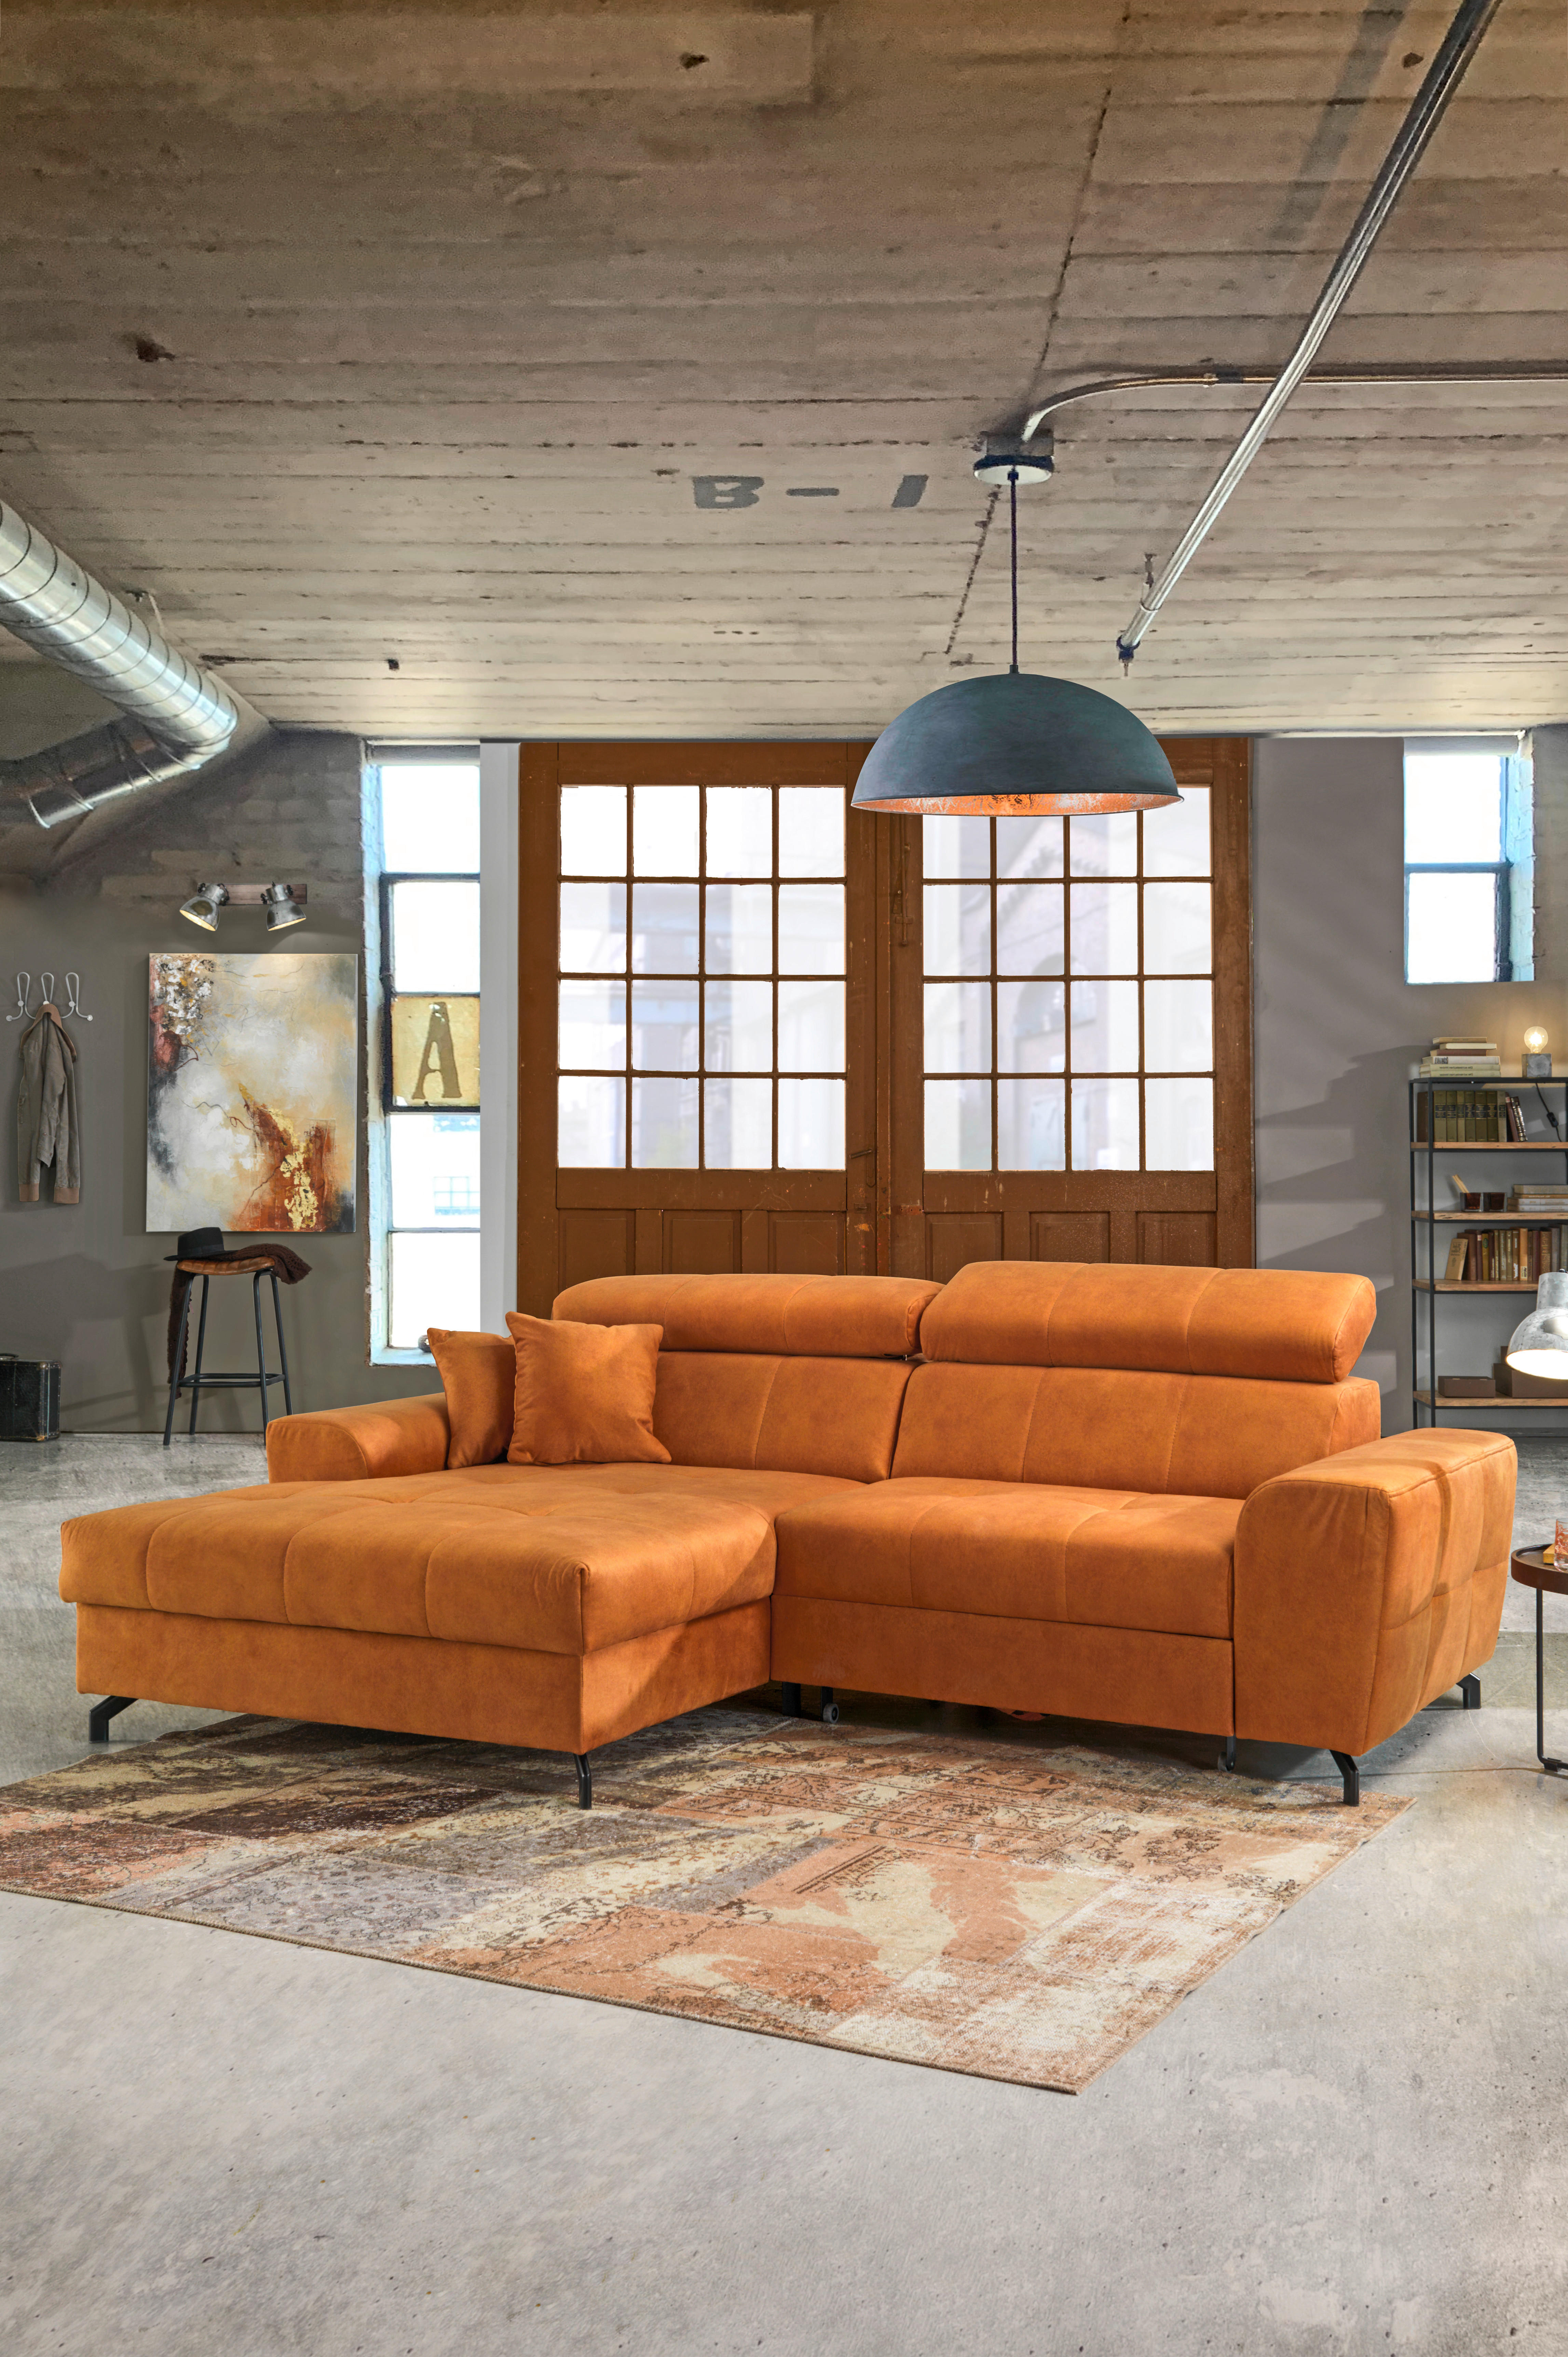 WOHNLANDSCHAFT in Velours Orange  - Schwarz/Orange, Design, Textil/Metall (181/267cm) - Carryhome